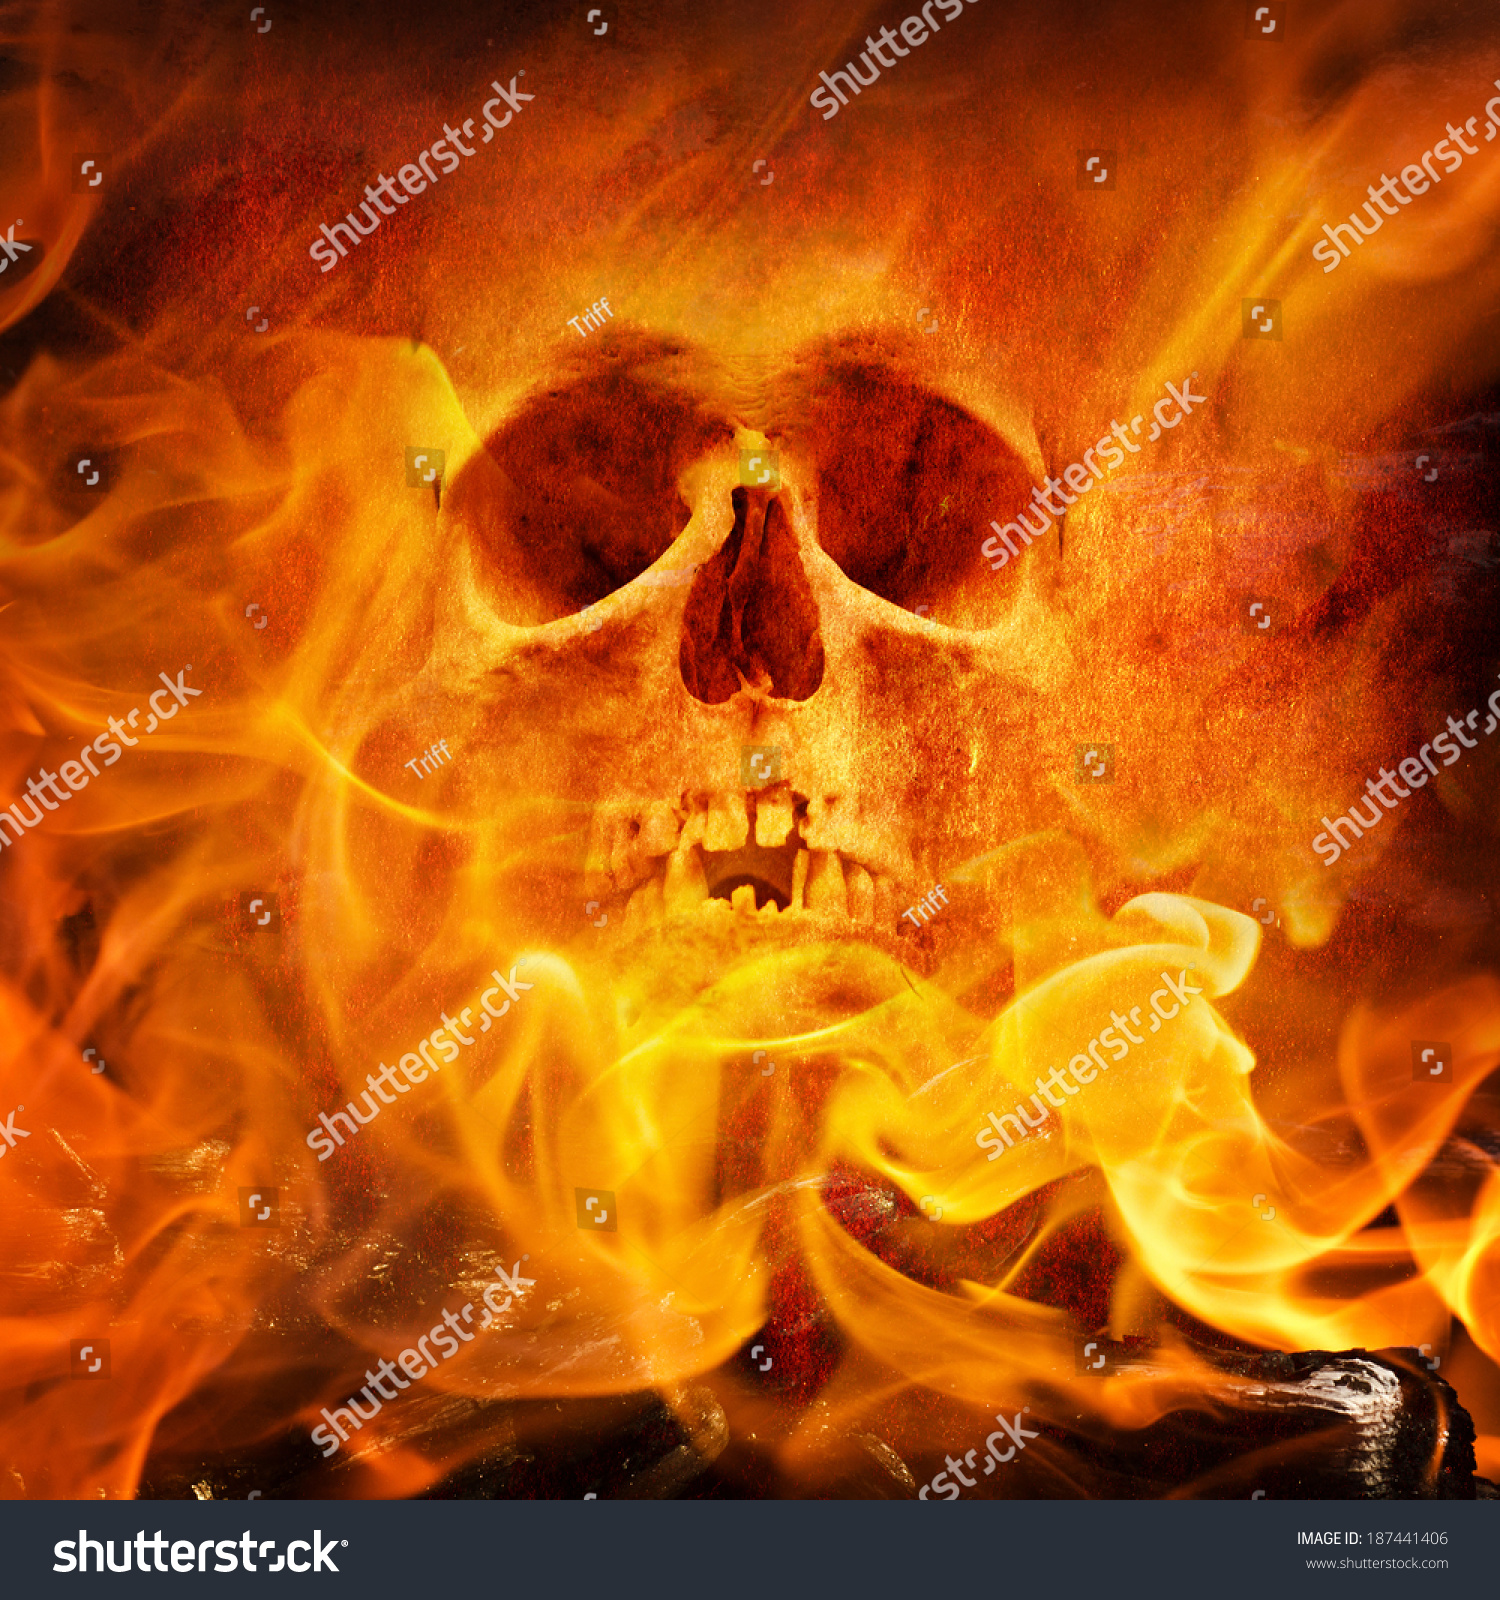 Fire Skull Stock Photo 187441406 - Shutterstock